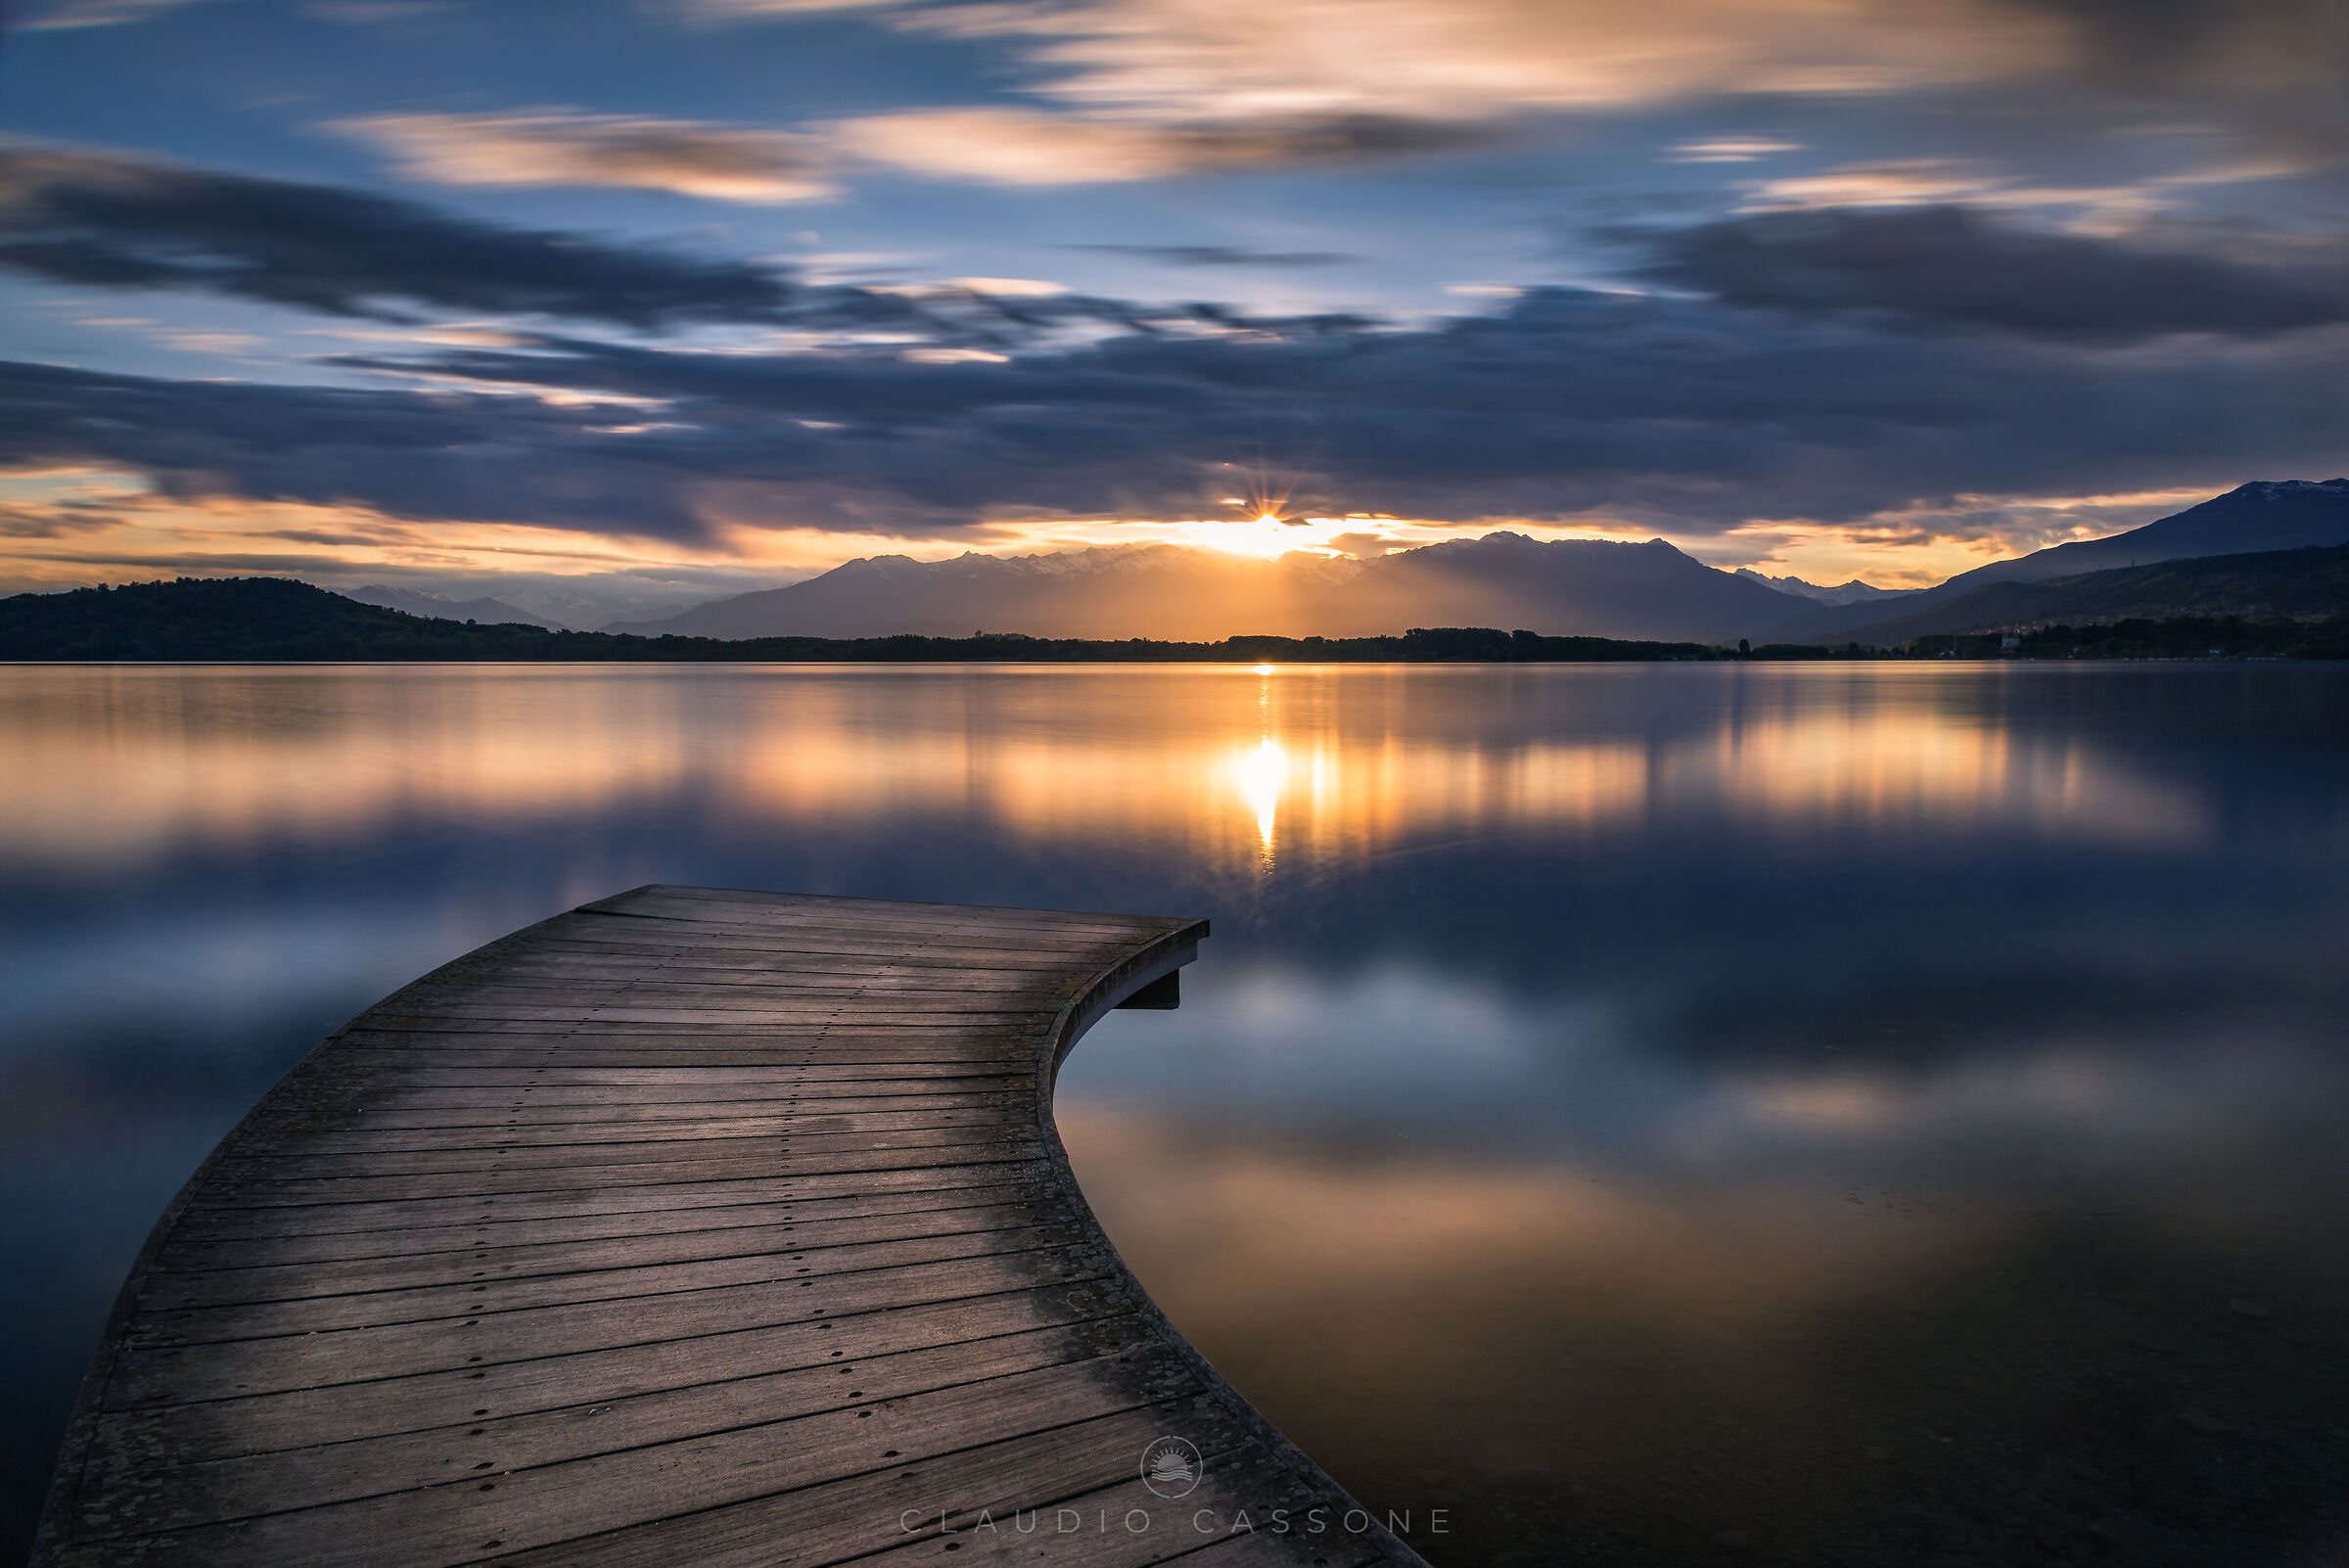 Sunset at Lake Viverone...